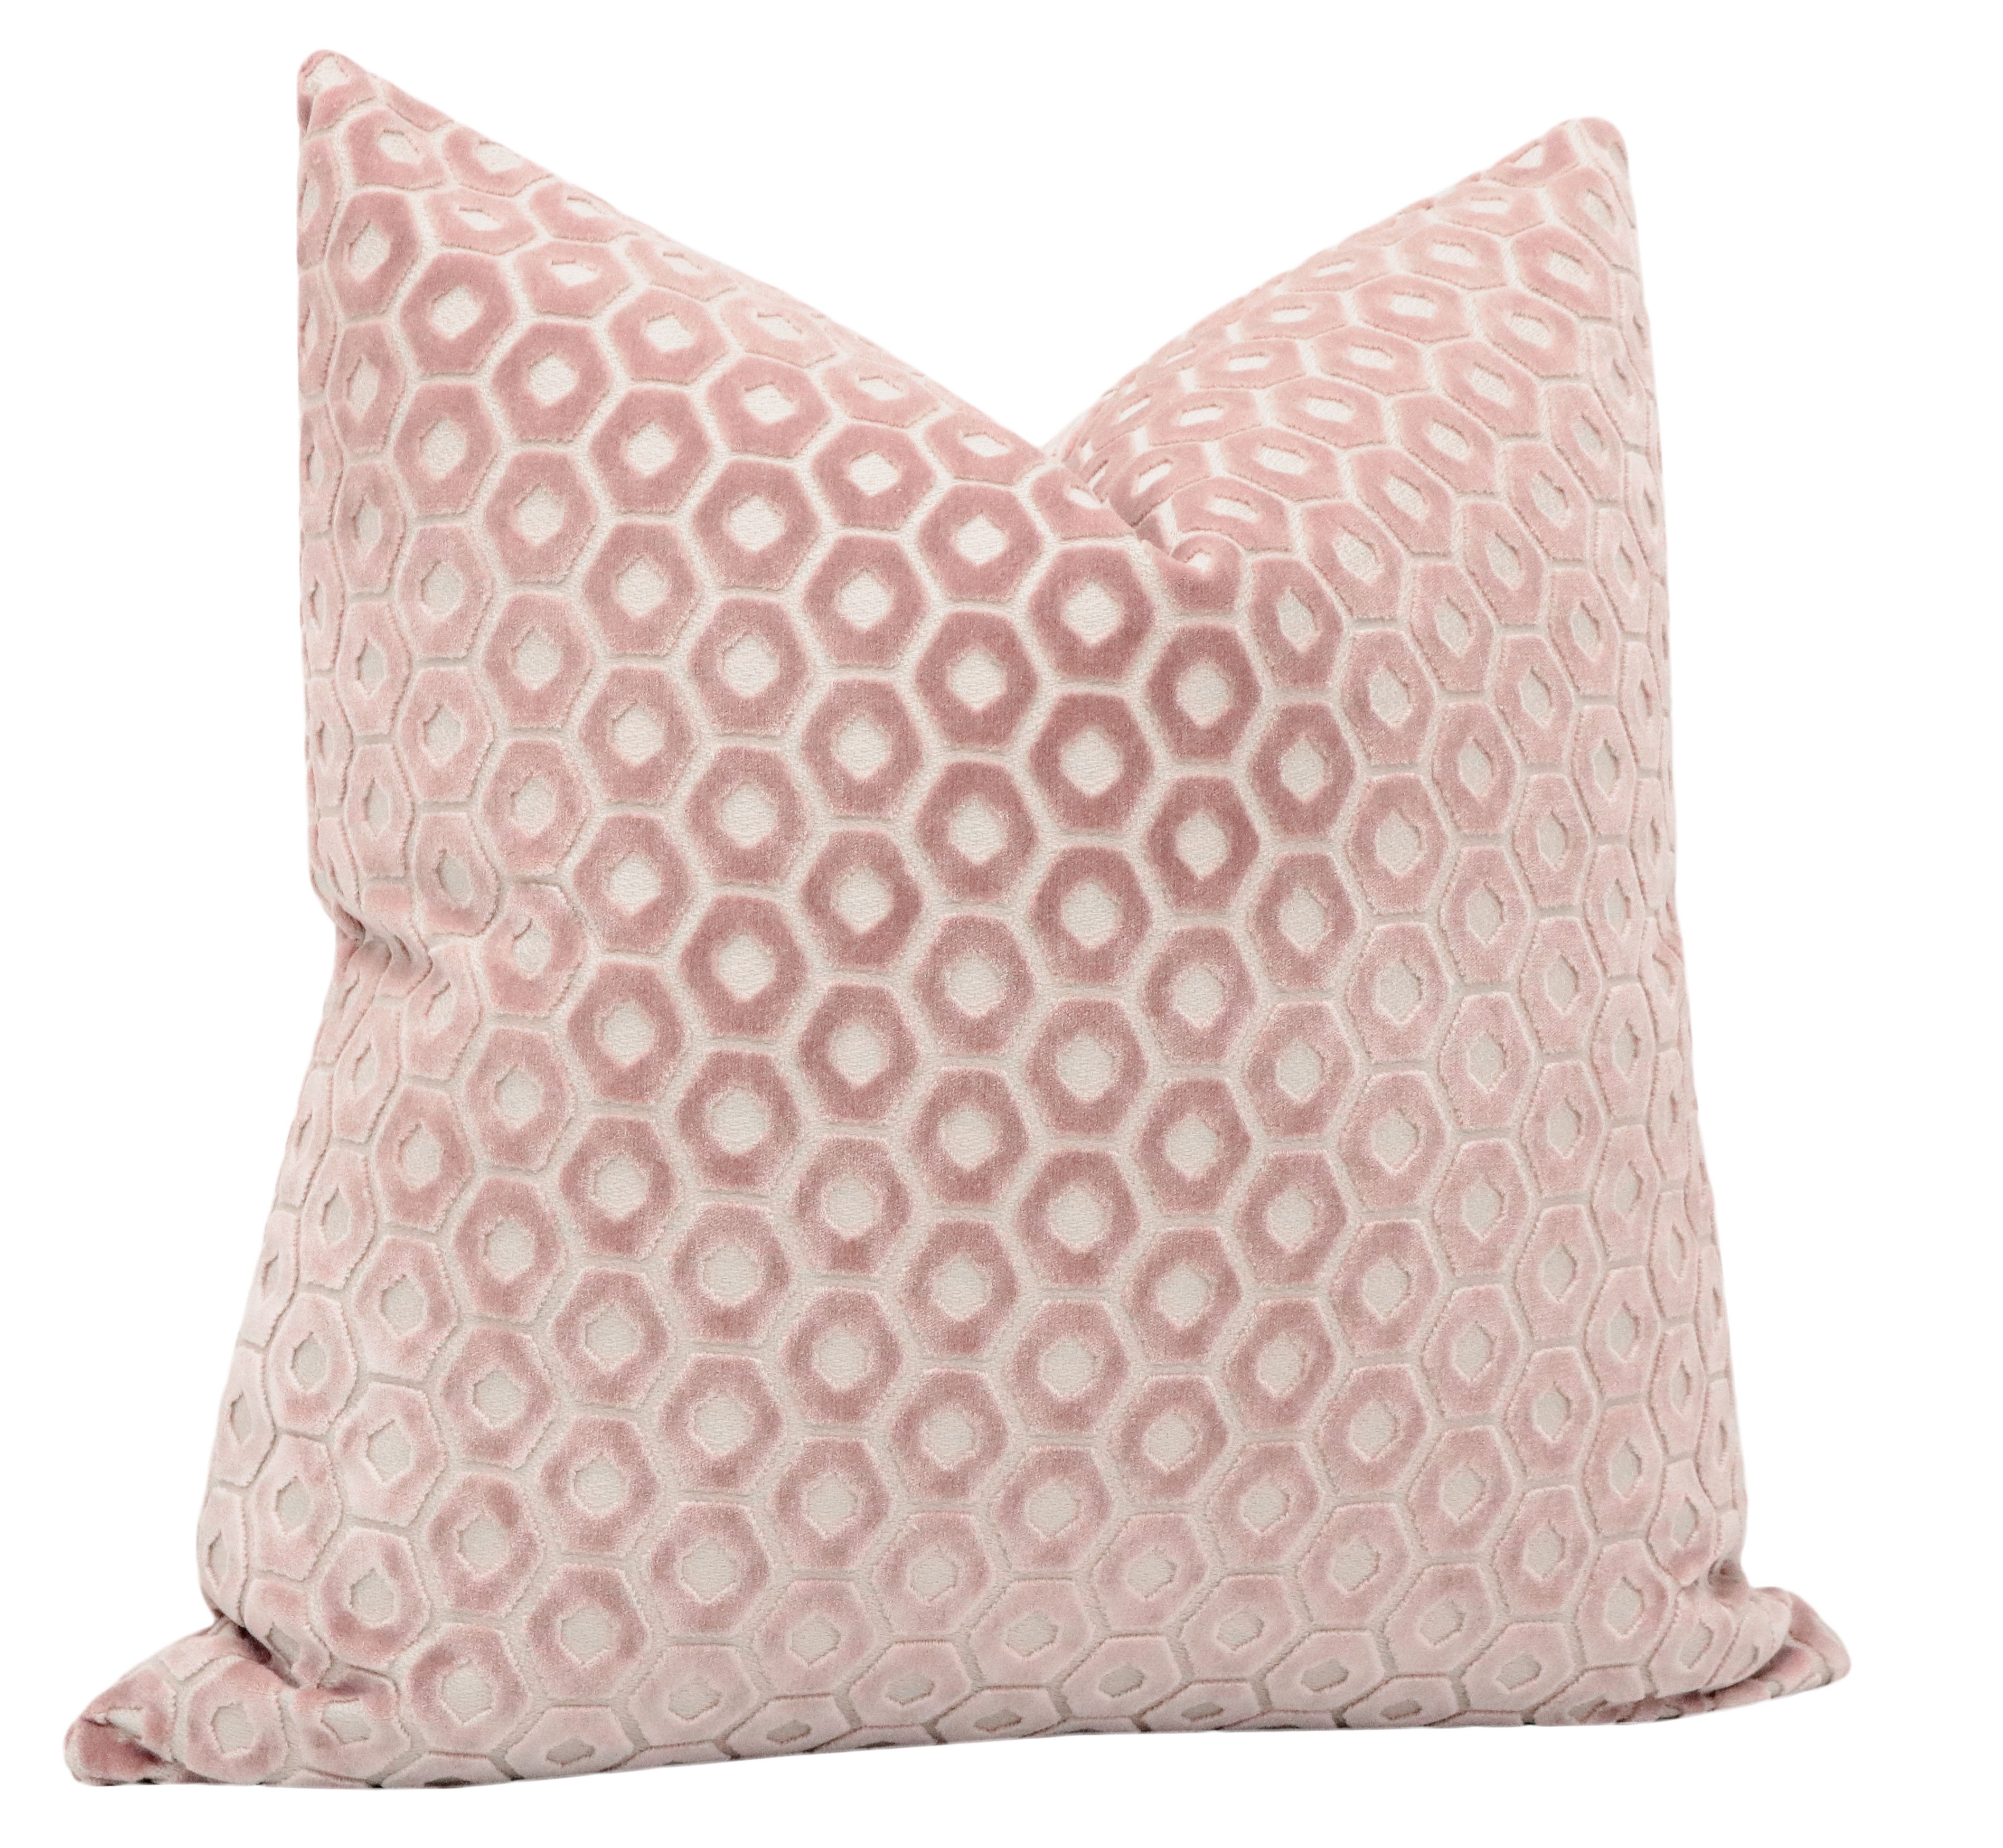 Paloma Cut Velvet Pillow Cover, Blush, 18" x 18" - Image 2